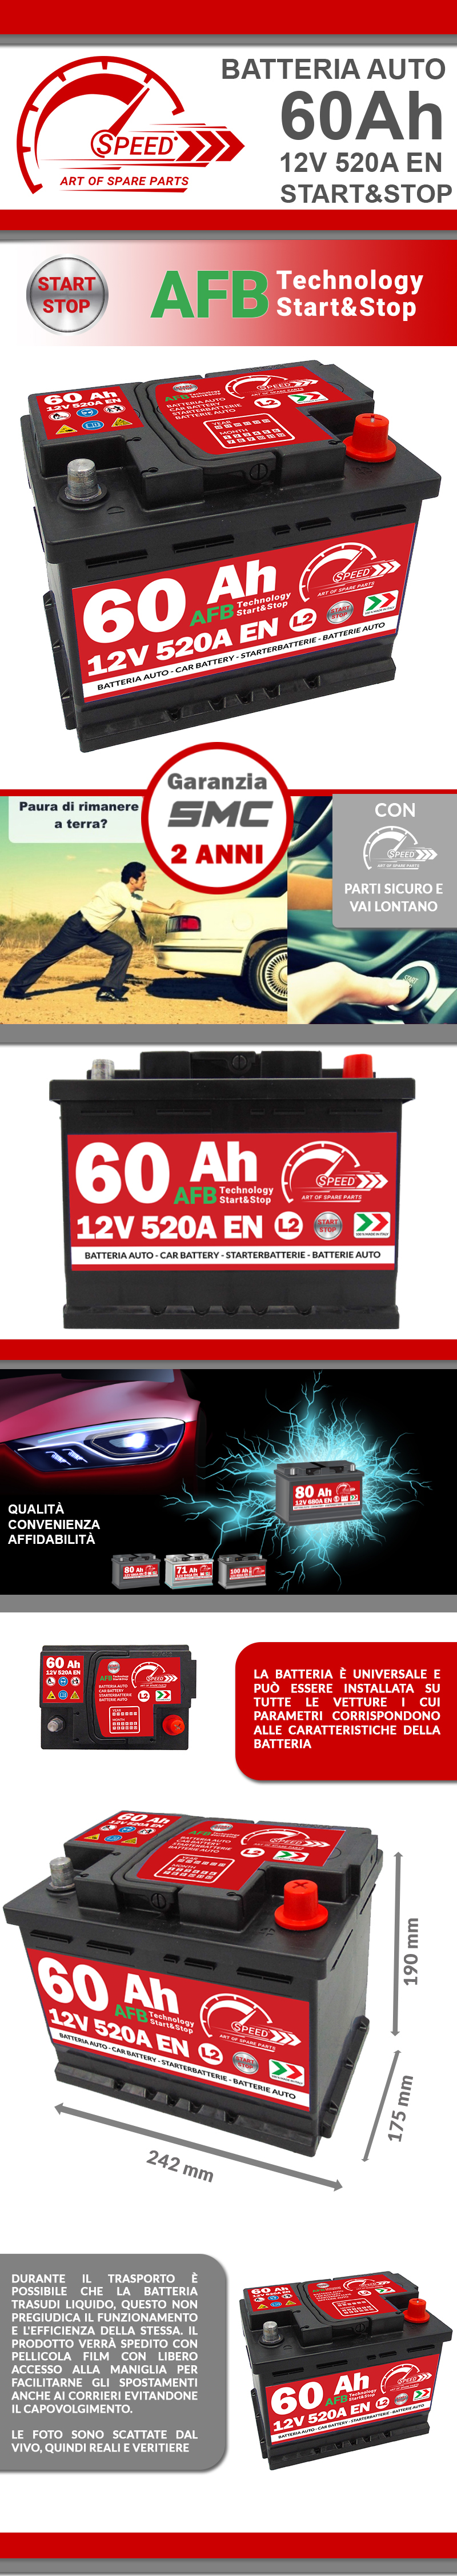 Batteria Auto Speed L2 60Ah 520A 12V AFB Start & Stop = Fiamm